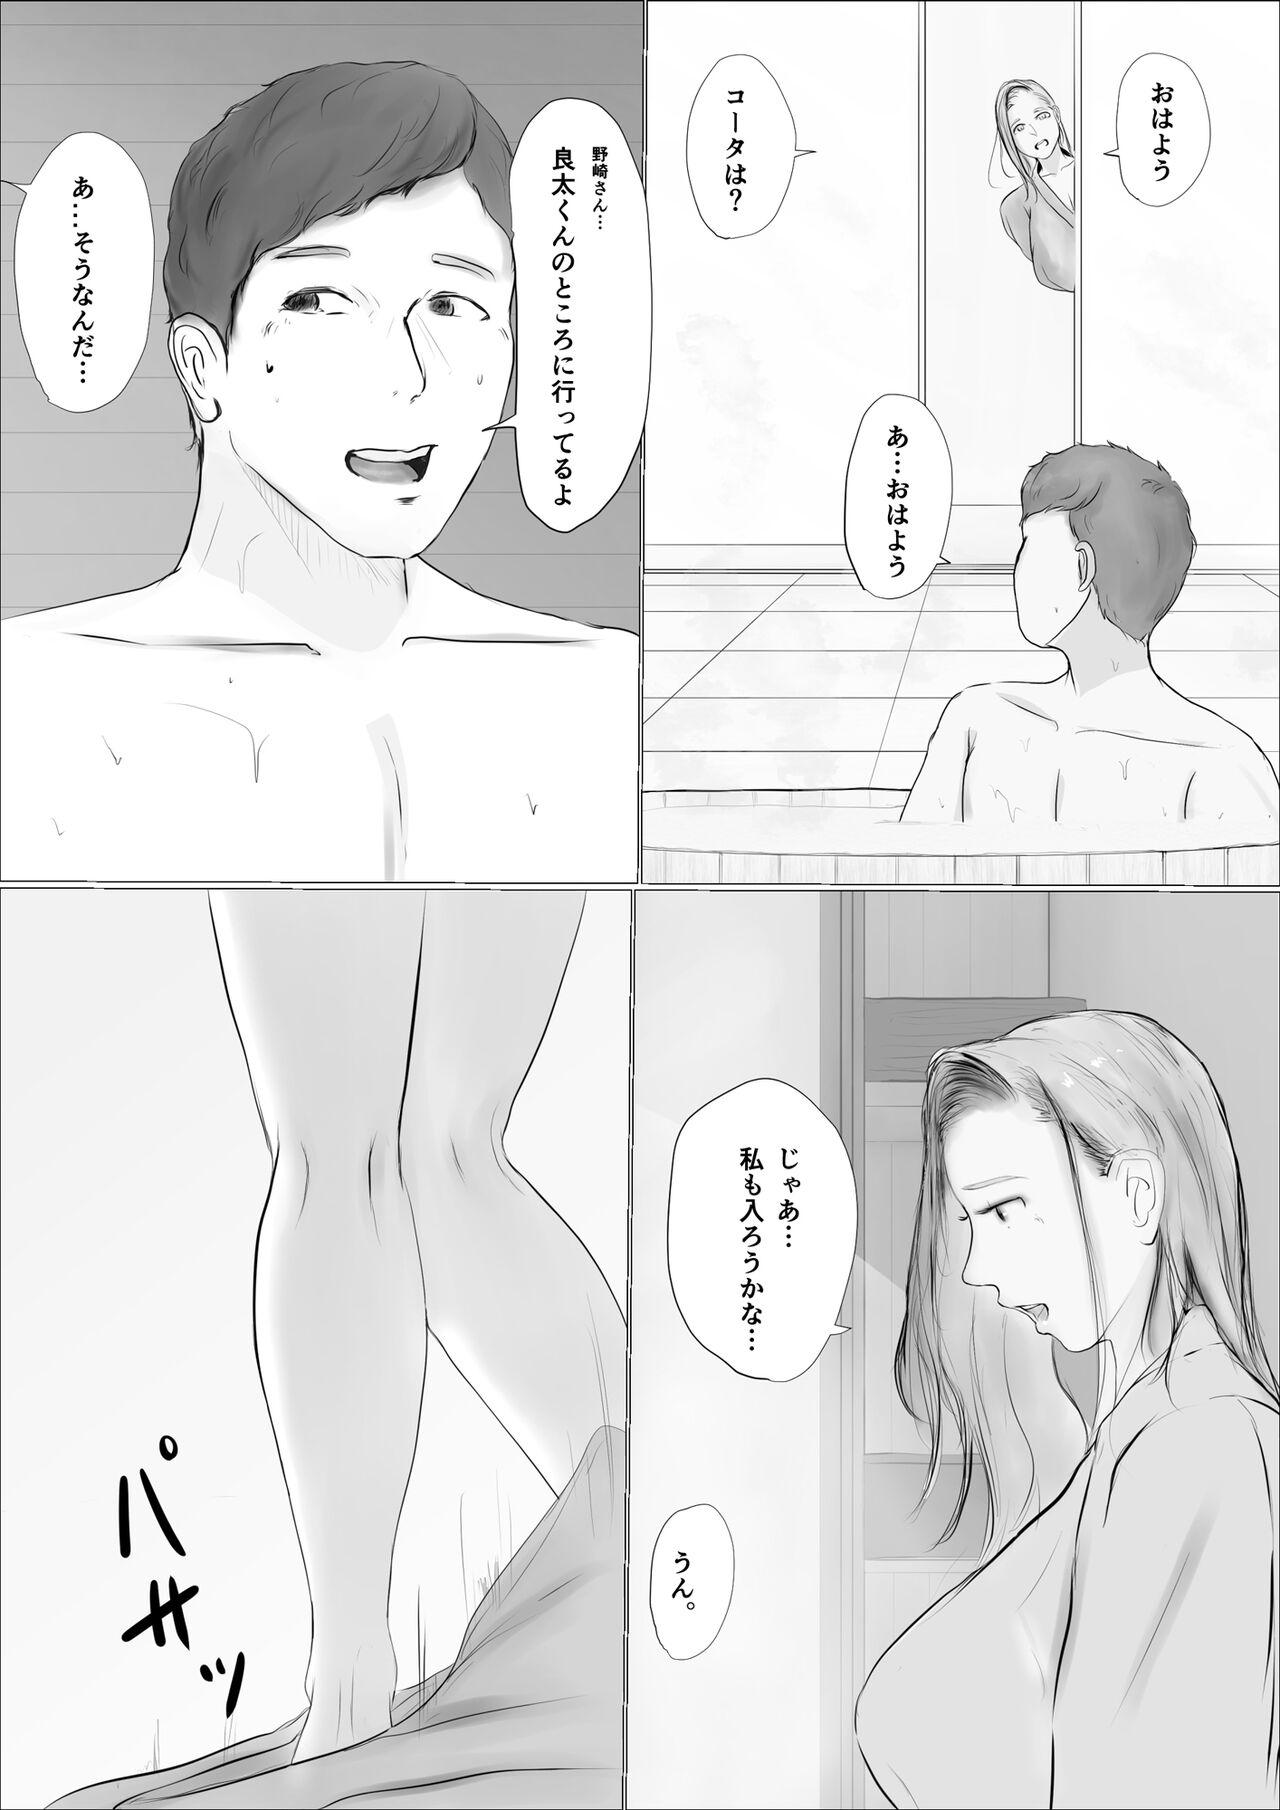 Ftv Girls 交換物語〜2日目〜 Porno 18 - Page 5